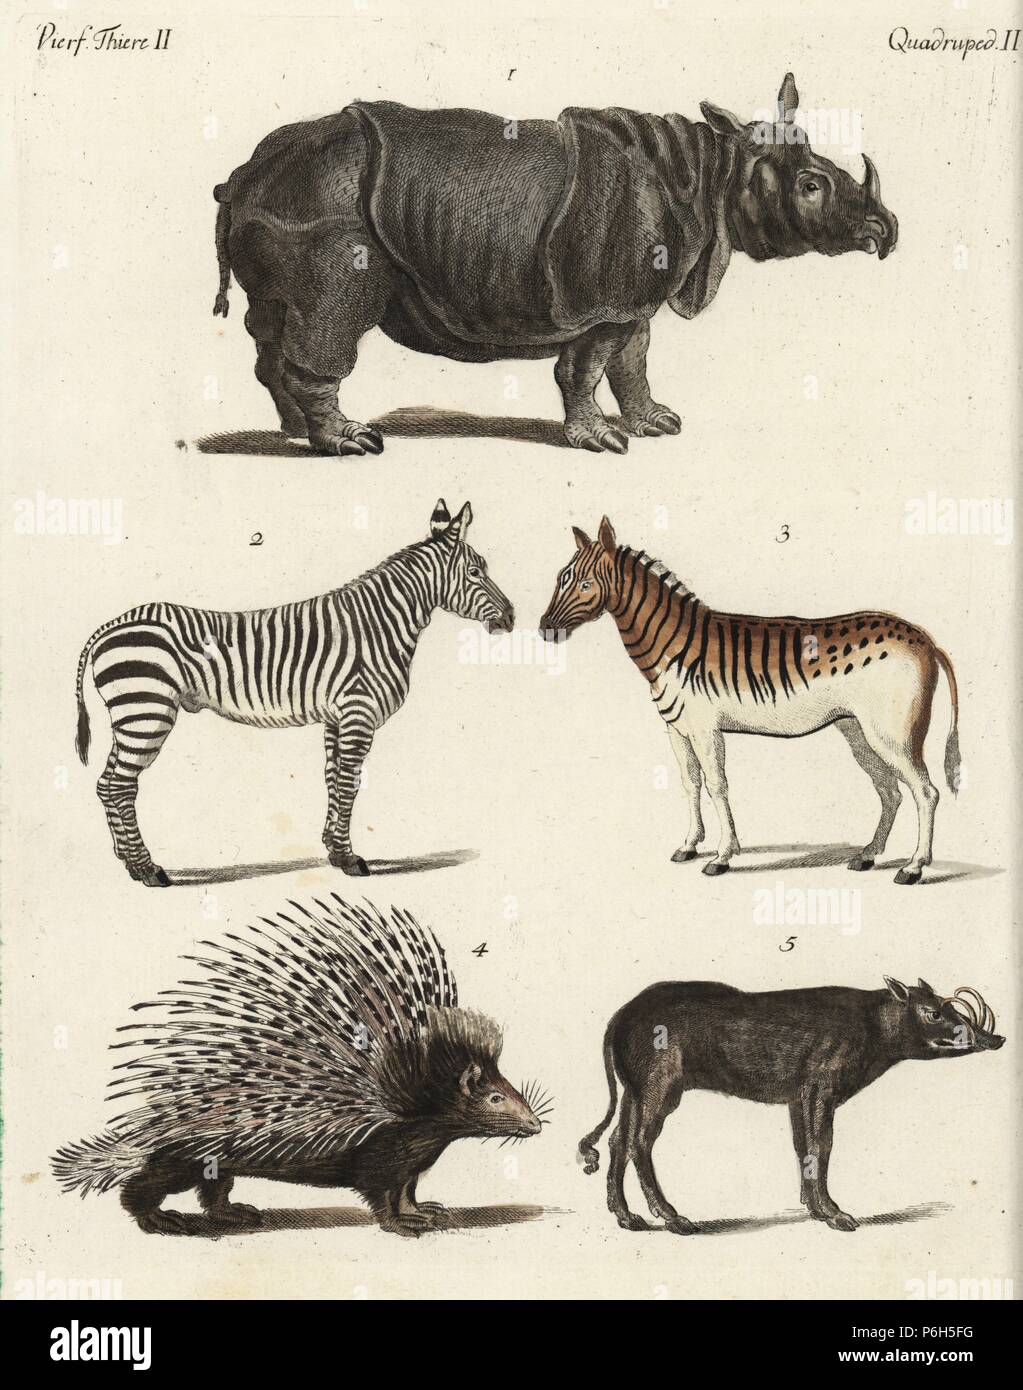 Indische Nashorn, Rhinoceros unicornis, ebenen Zebra, Equus quagga, Männlich 2 Weiblich 3, indische Stachelschweine, Hystrix Indica, und Sulawesi babirusa, Babyrousa celebensis. Papierkörbe Kupferstich von bertuch's 'Bilderbuch pelz Kinder" (Bilderbuch für Kinder), Weimar, 1792. Johann Friedrich Bertuch (1747-1822) war ein deutscher Verleger und Mann der Künste berühmt für seine 12-Band Enzyklopädie für Kinder mit 1.200 illustrierte gravierte Schilder auf natürliche Geschichte, Wissenschaft, Kostüm, Mythologie usw. Von 1790-1830 veröffentlicht. Stockfoto